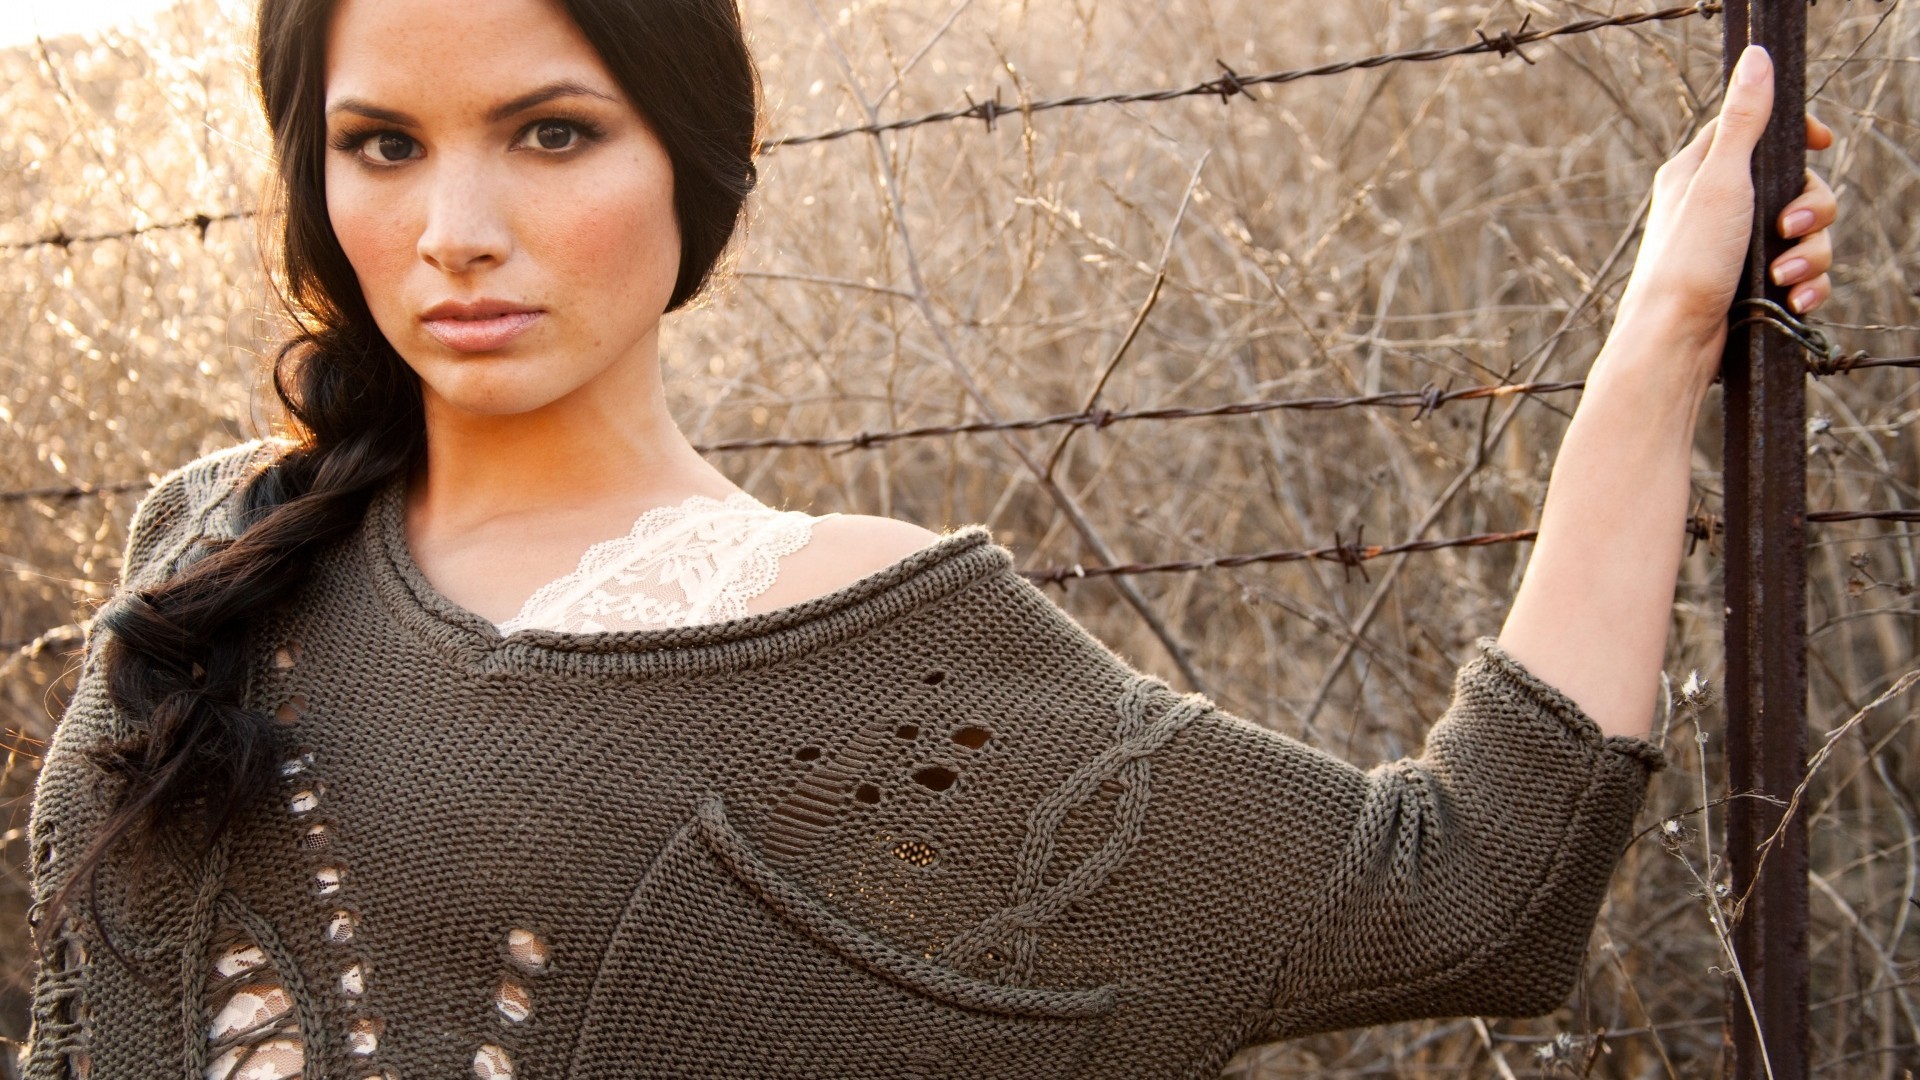 women model brunette long hair face women outdoors sweater katrina law actress Wallpaper